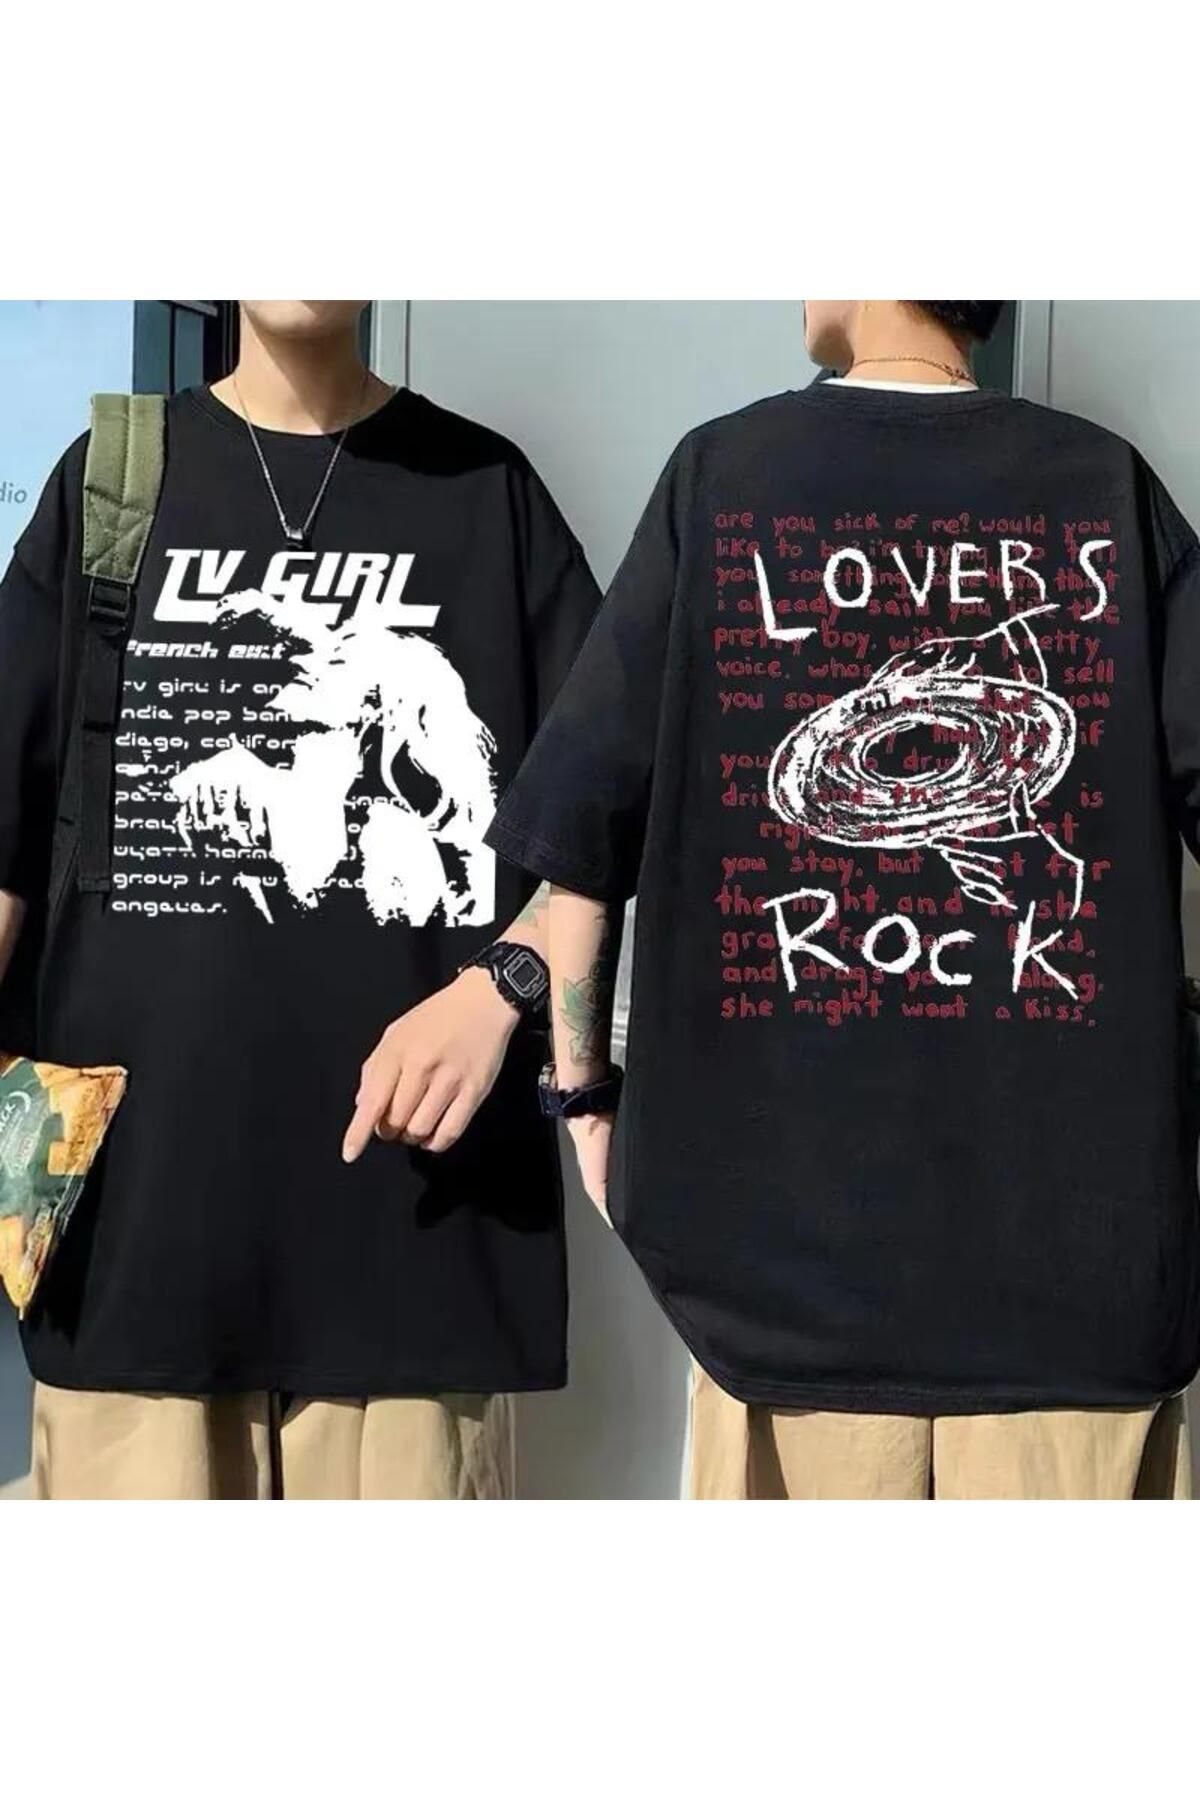 Köstebek Siyah Tv Girl Lovers Rock Unisex T-Shirt